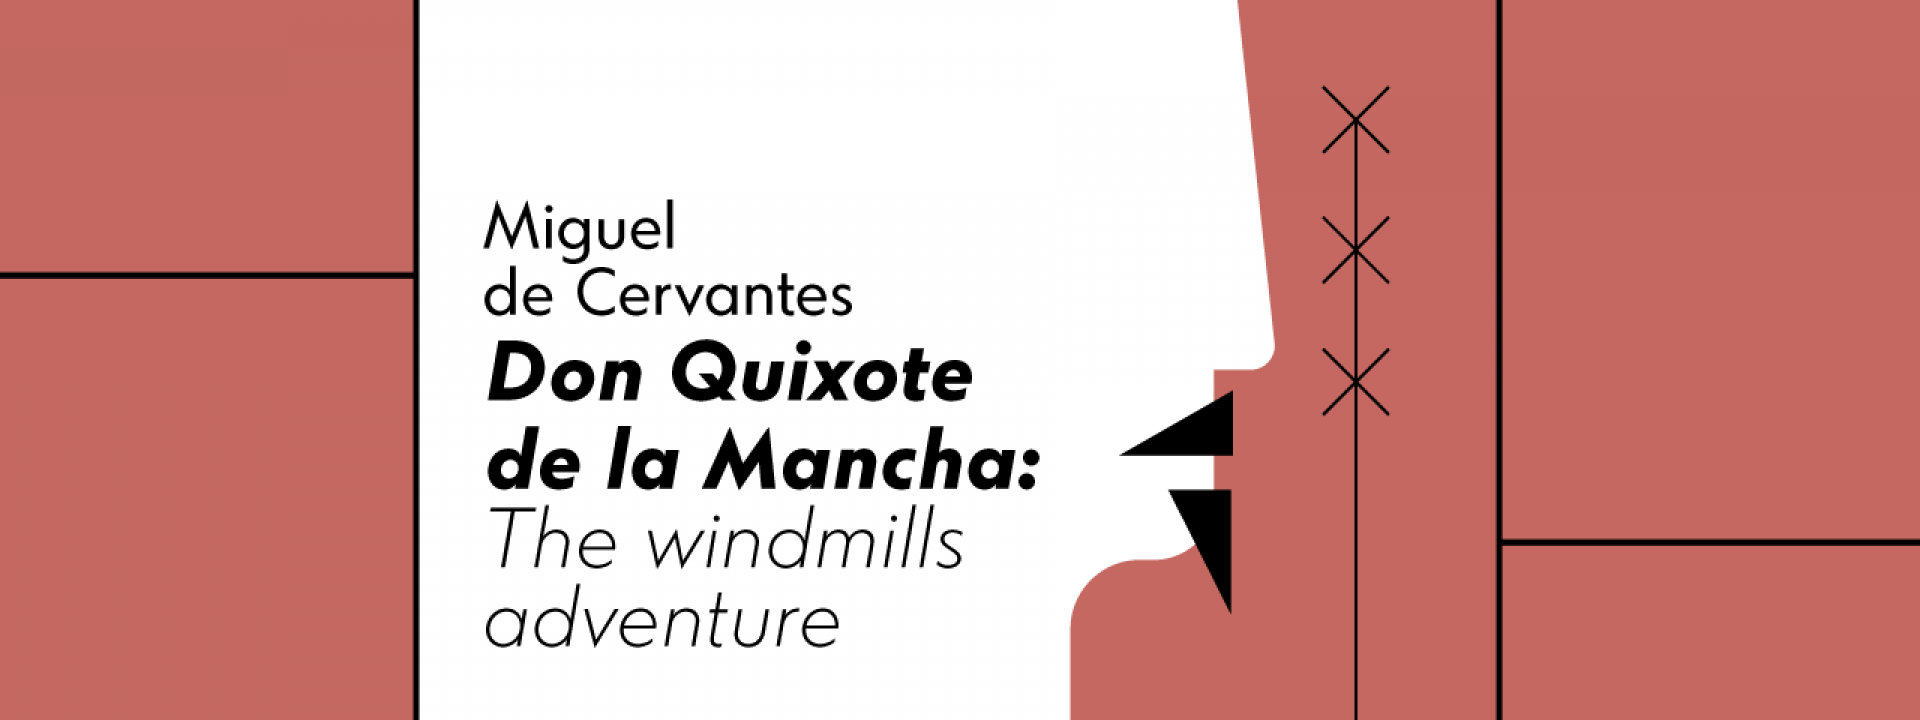 Parabases: Faces of the Hero | Miguel de Cervantes, Don Quixote de la Mancha: The windmills adventure - Εικόνα